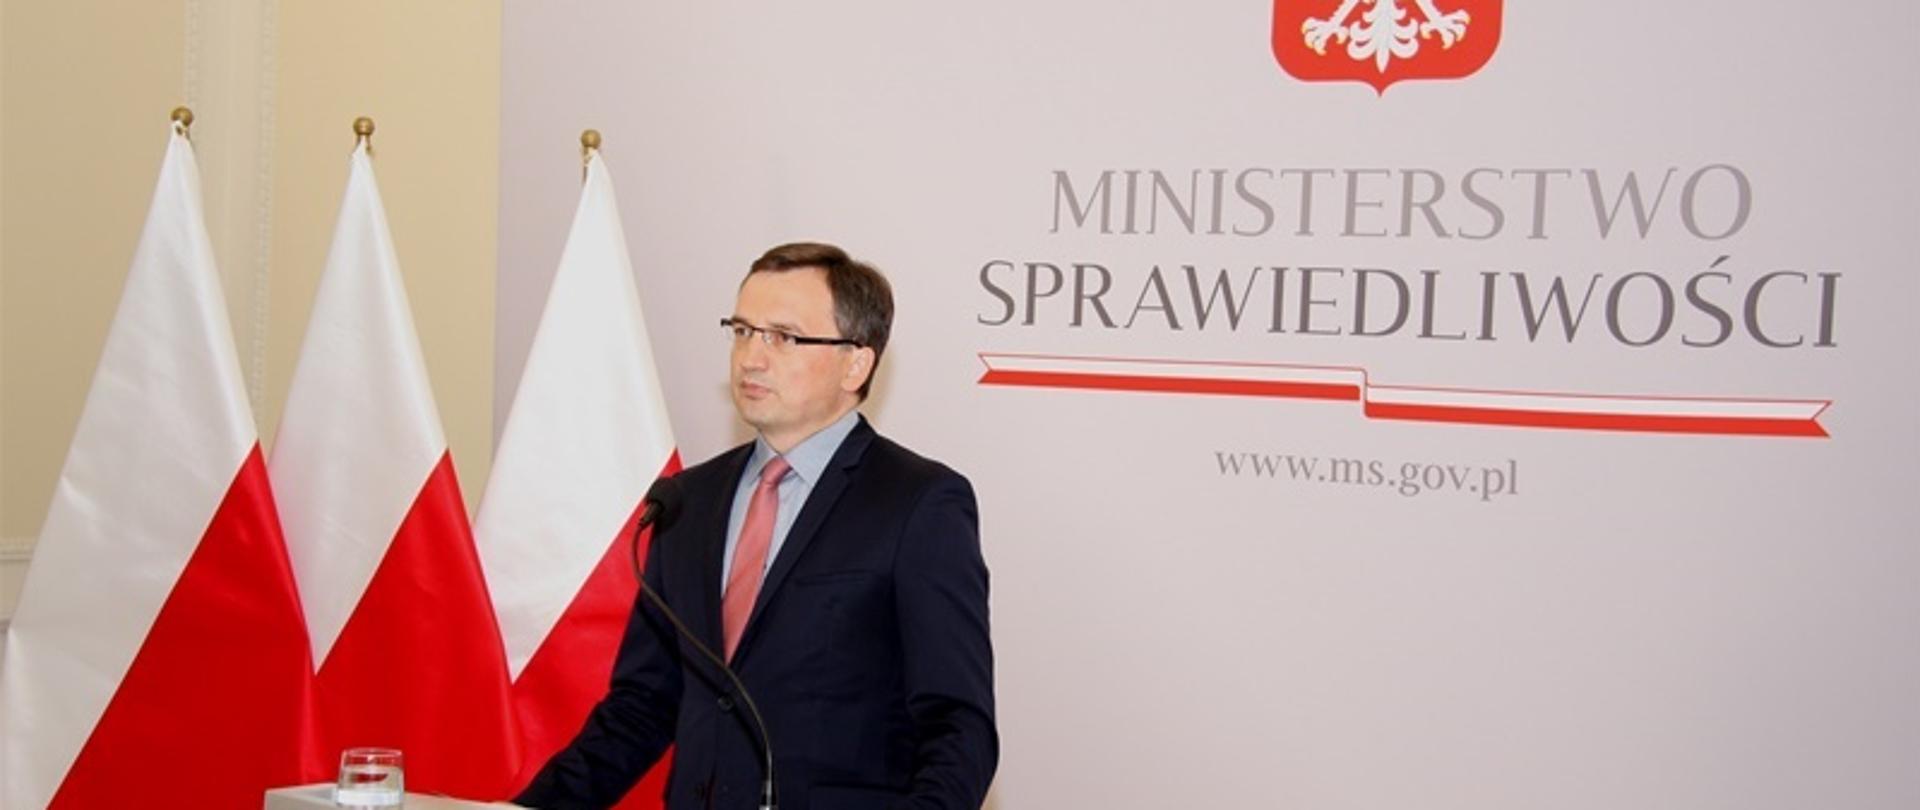 Minister Sprawiedliwości Zbigniew Ziobro